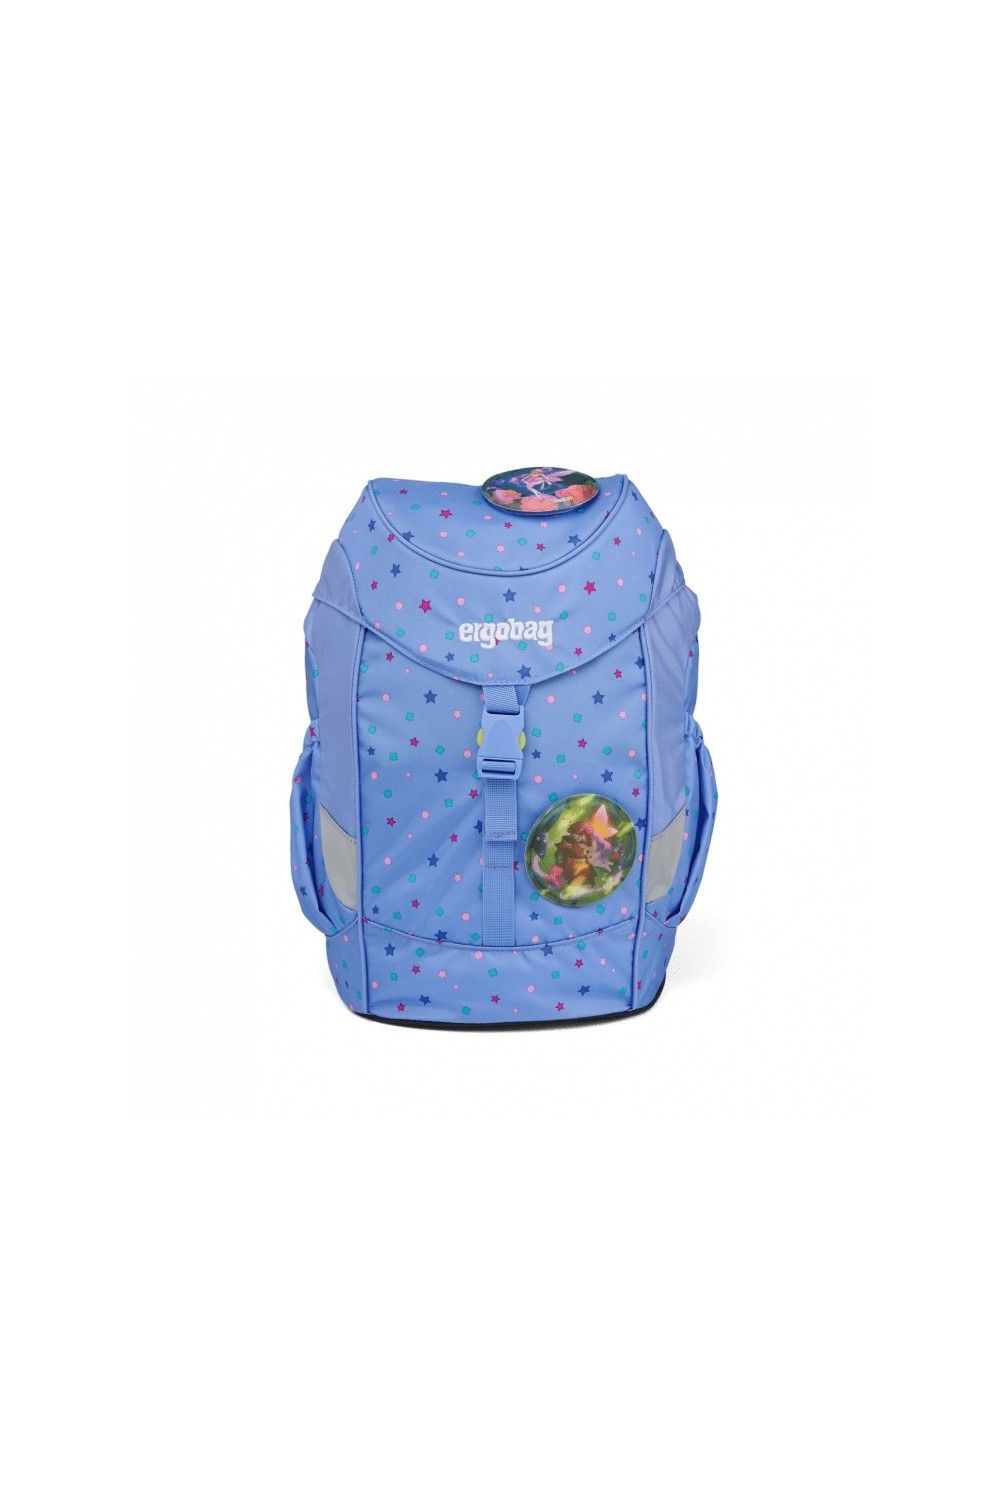 ergobag mini Bärzaubernd children backpack